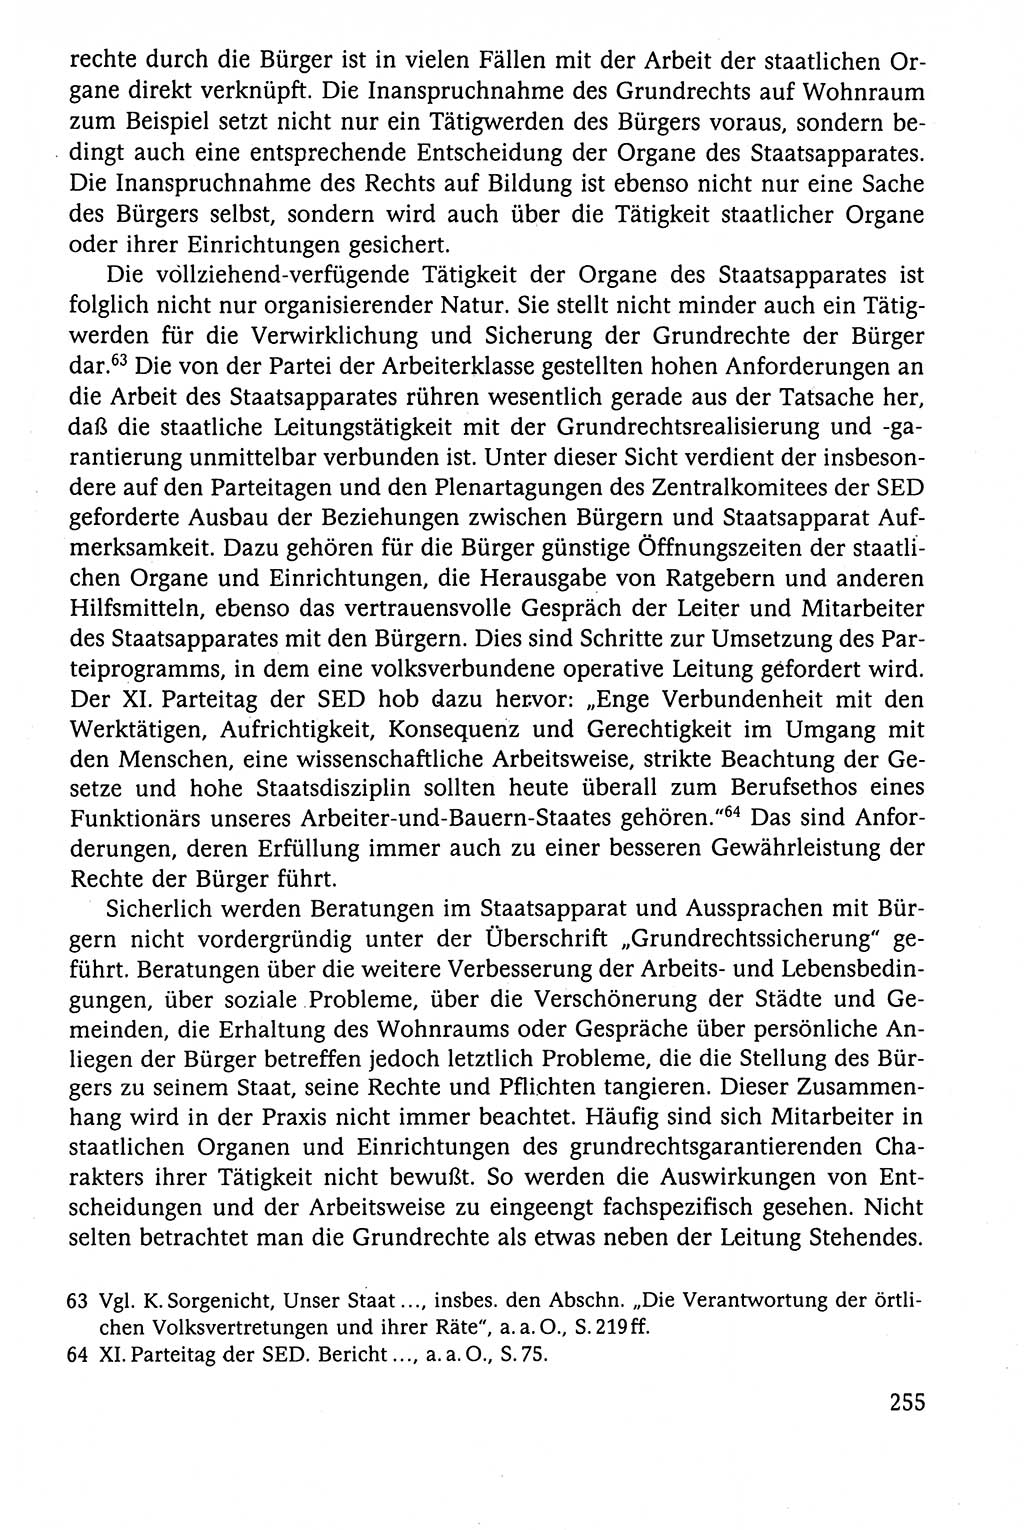 Der Staat im politischen System der DDR (Deutsche Demokratische Republik) 1986, Seite 255 (St. pol. Sys. DDR 1986, S. 255)